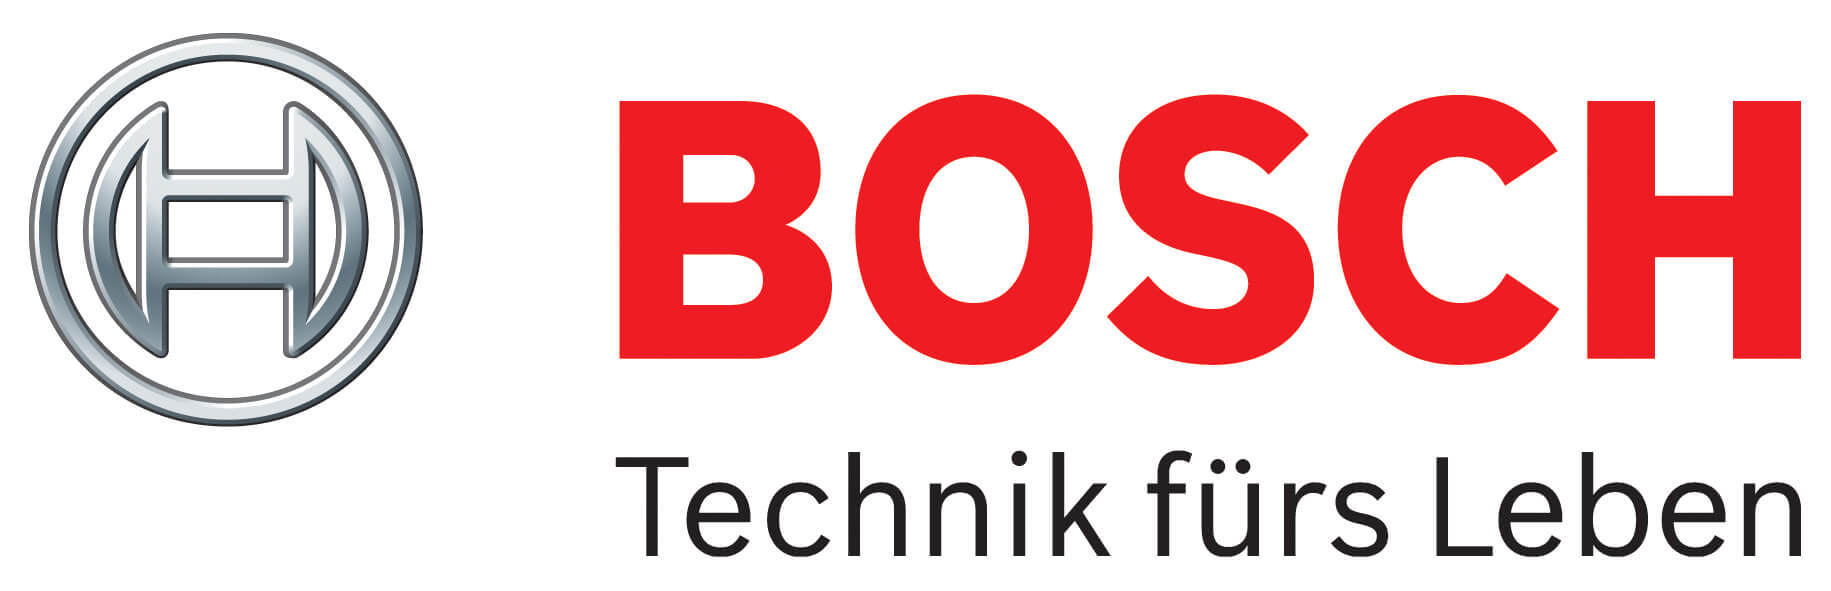 bosch_Logo_Text.jpg